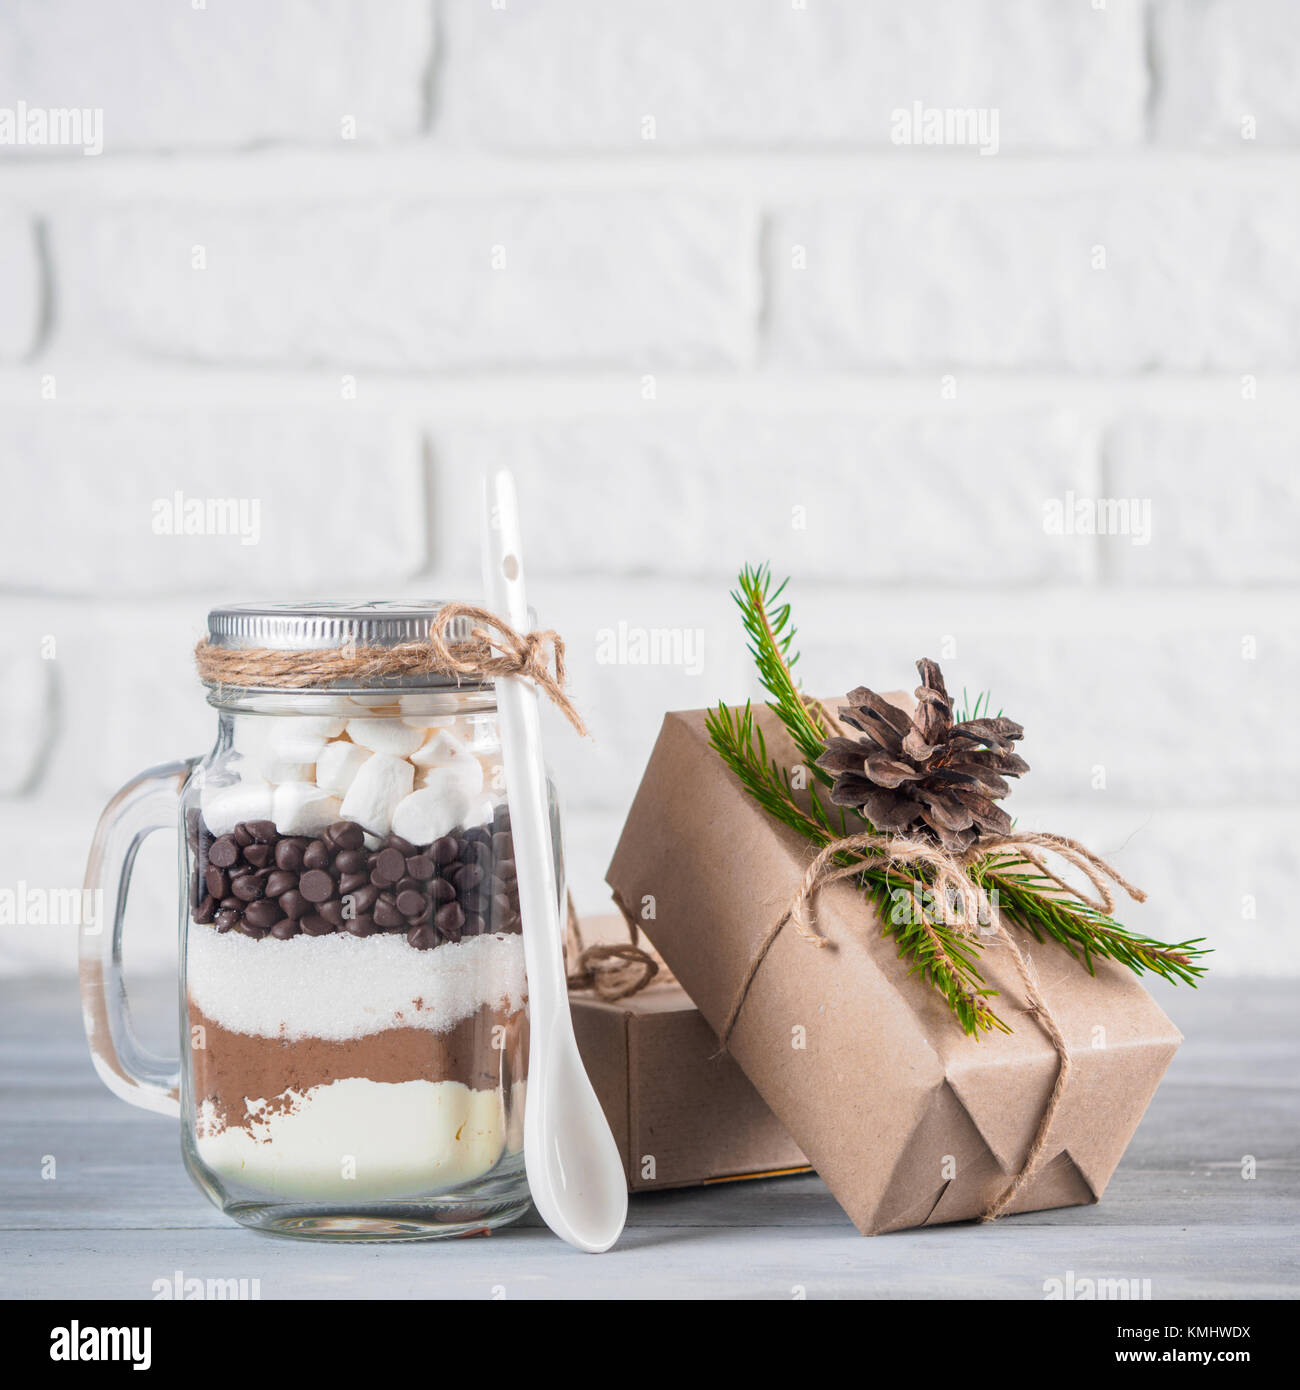 Mezcla de chocolate caliente en mason jar y rústico cajas de regalo en el  cuadro gris y blanca pared de ladrillo. Navidad y vacaciones de invierno  idea regalos presupuesto-amistosas. Copiar Fotografía de